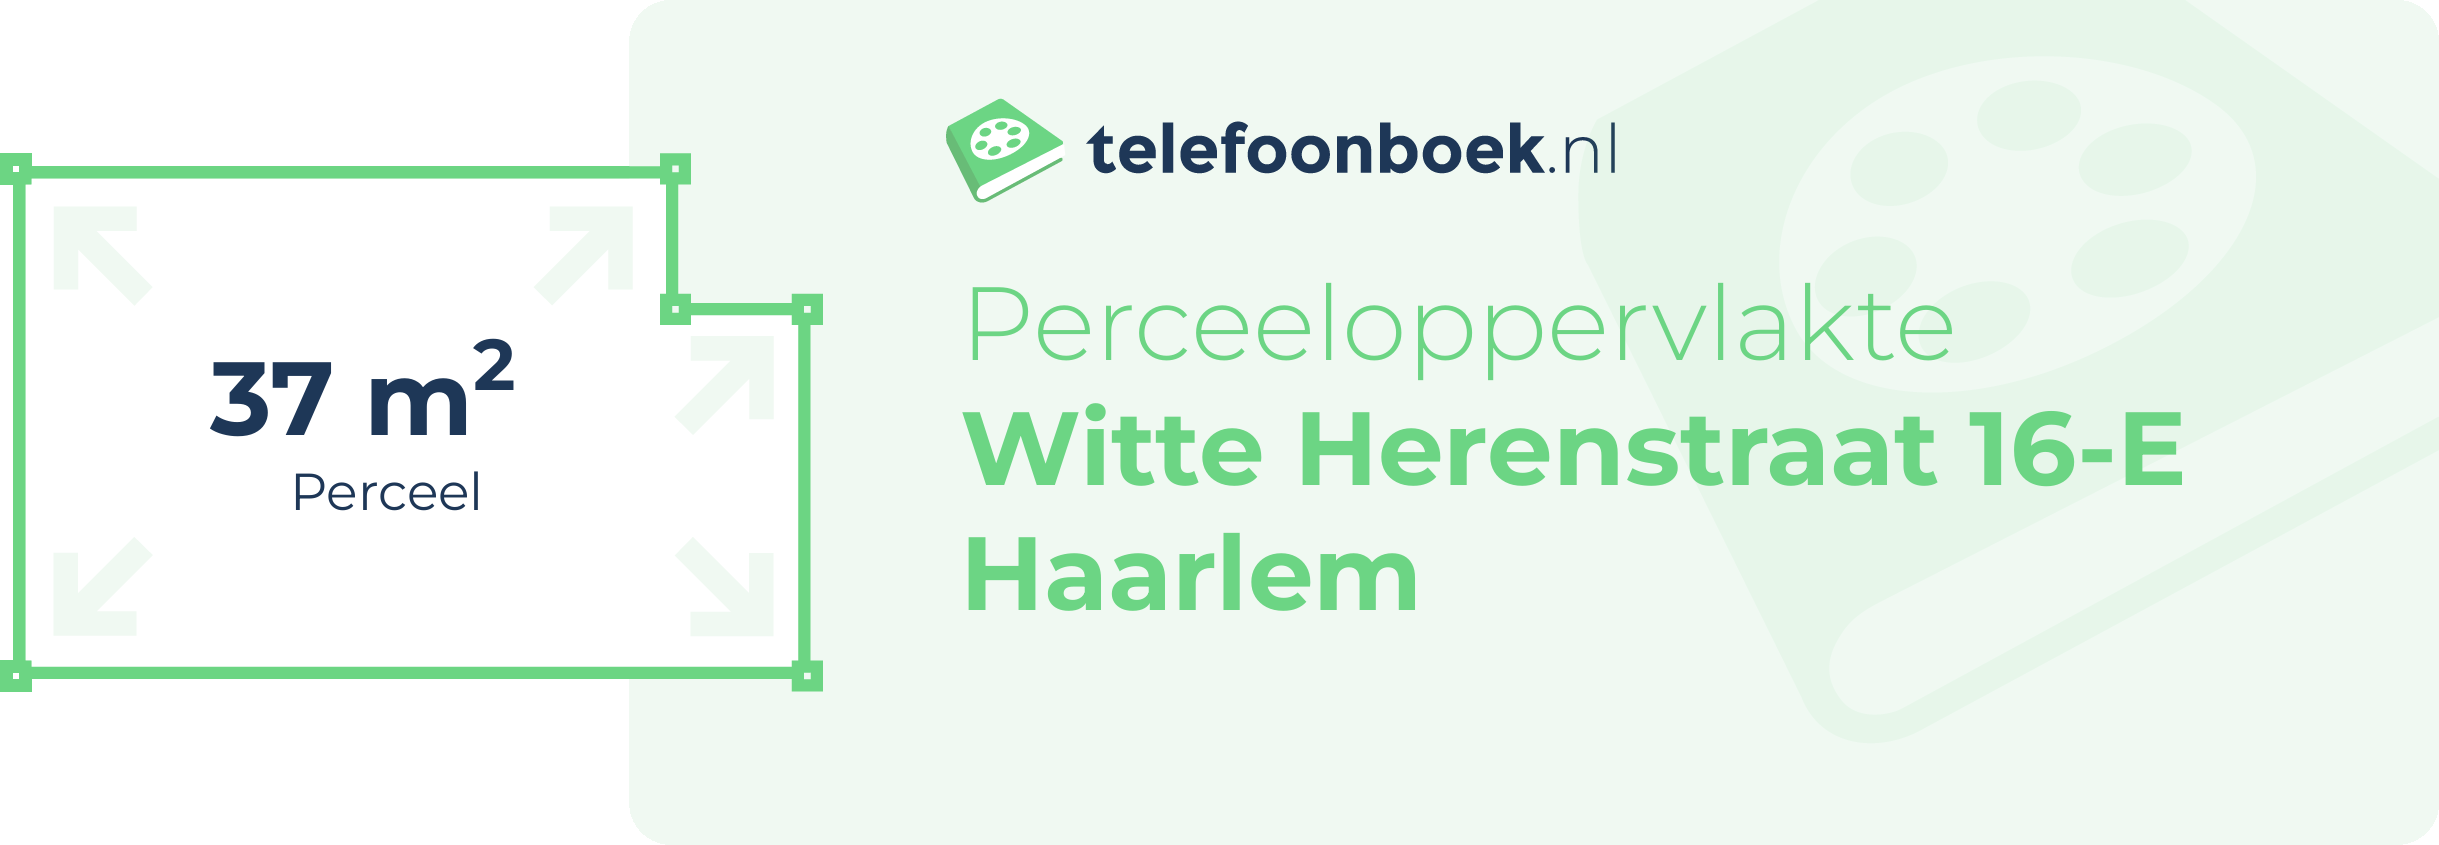 Perceeloppervlakte Witte Herenstraat 16-E Haarlem